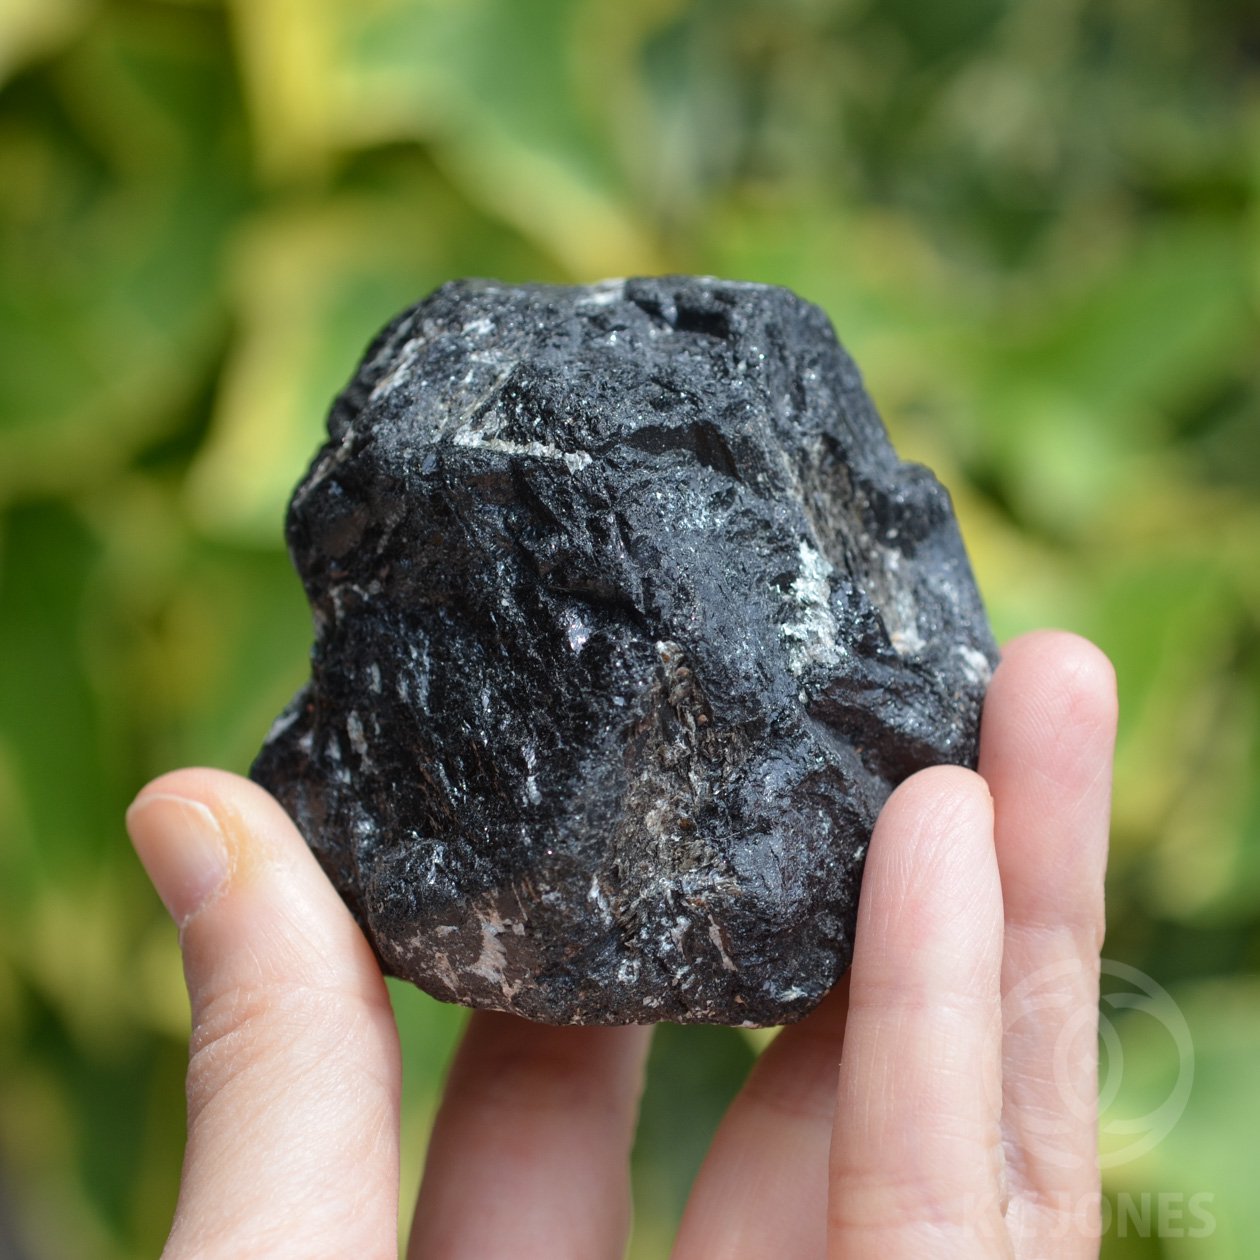 天然原石 ブラックトルマリン原石 電気石 /約1670g/1個 ブラジル産 www ...